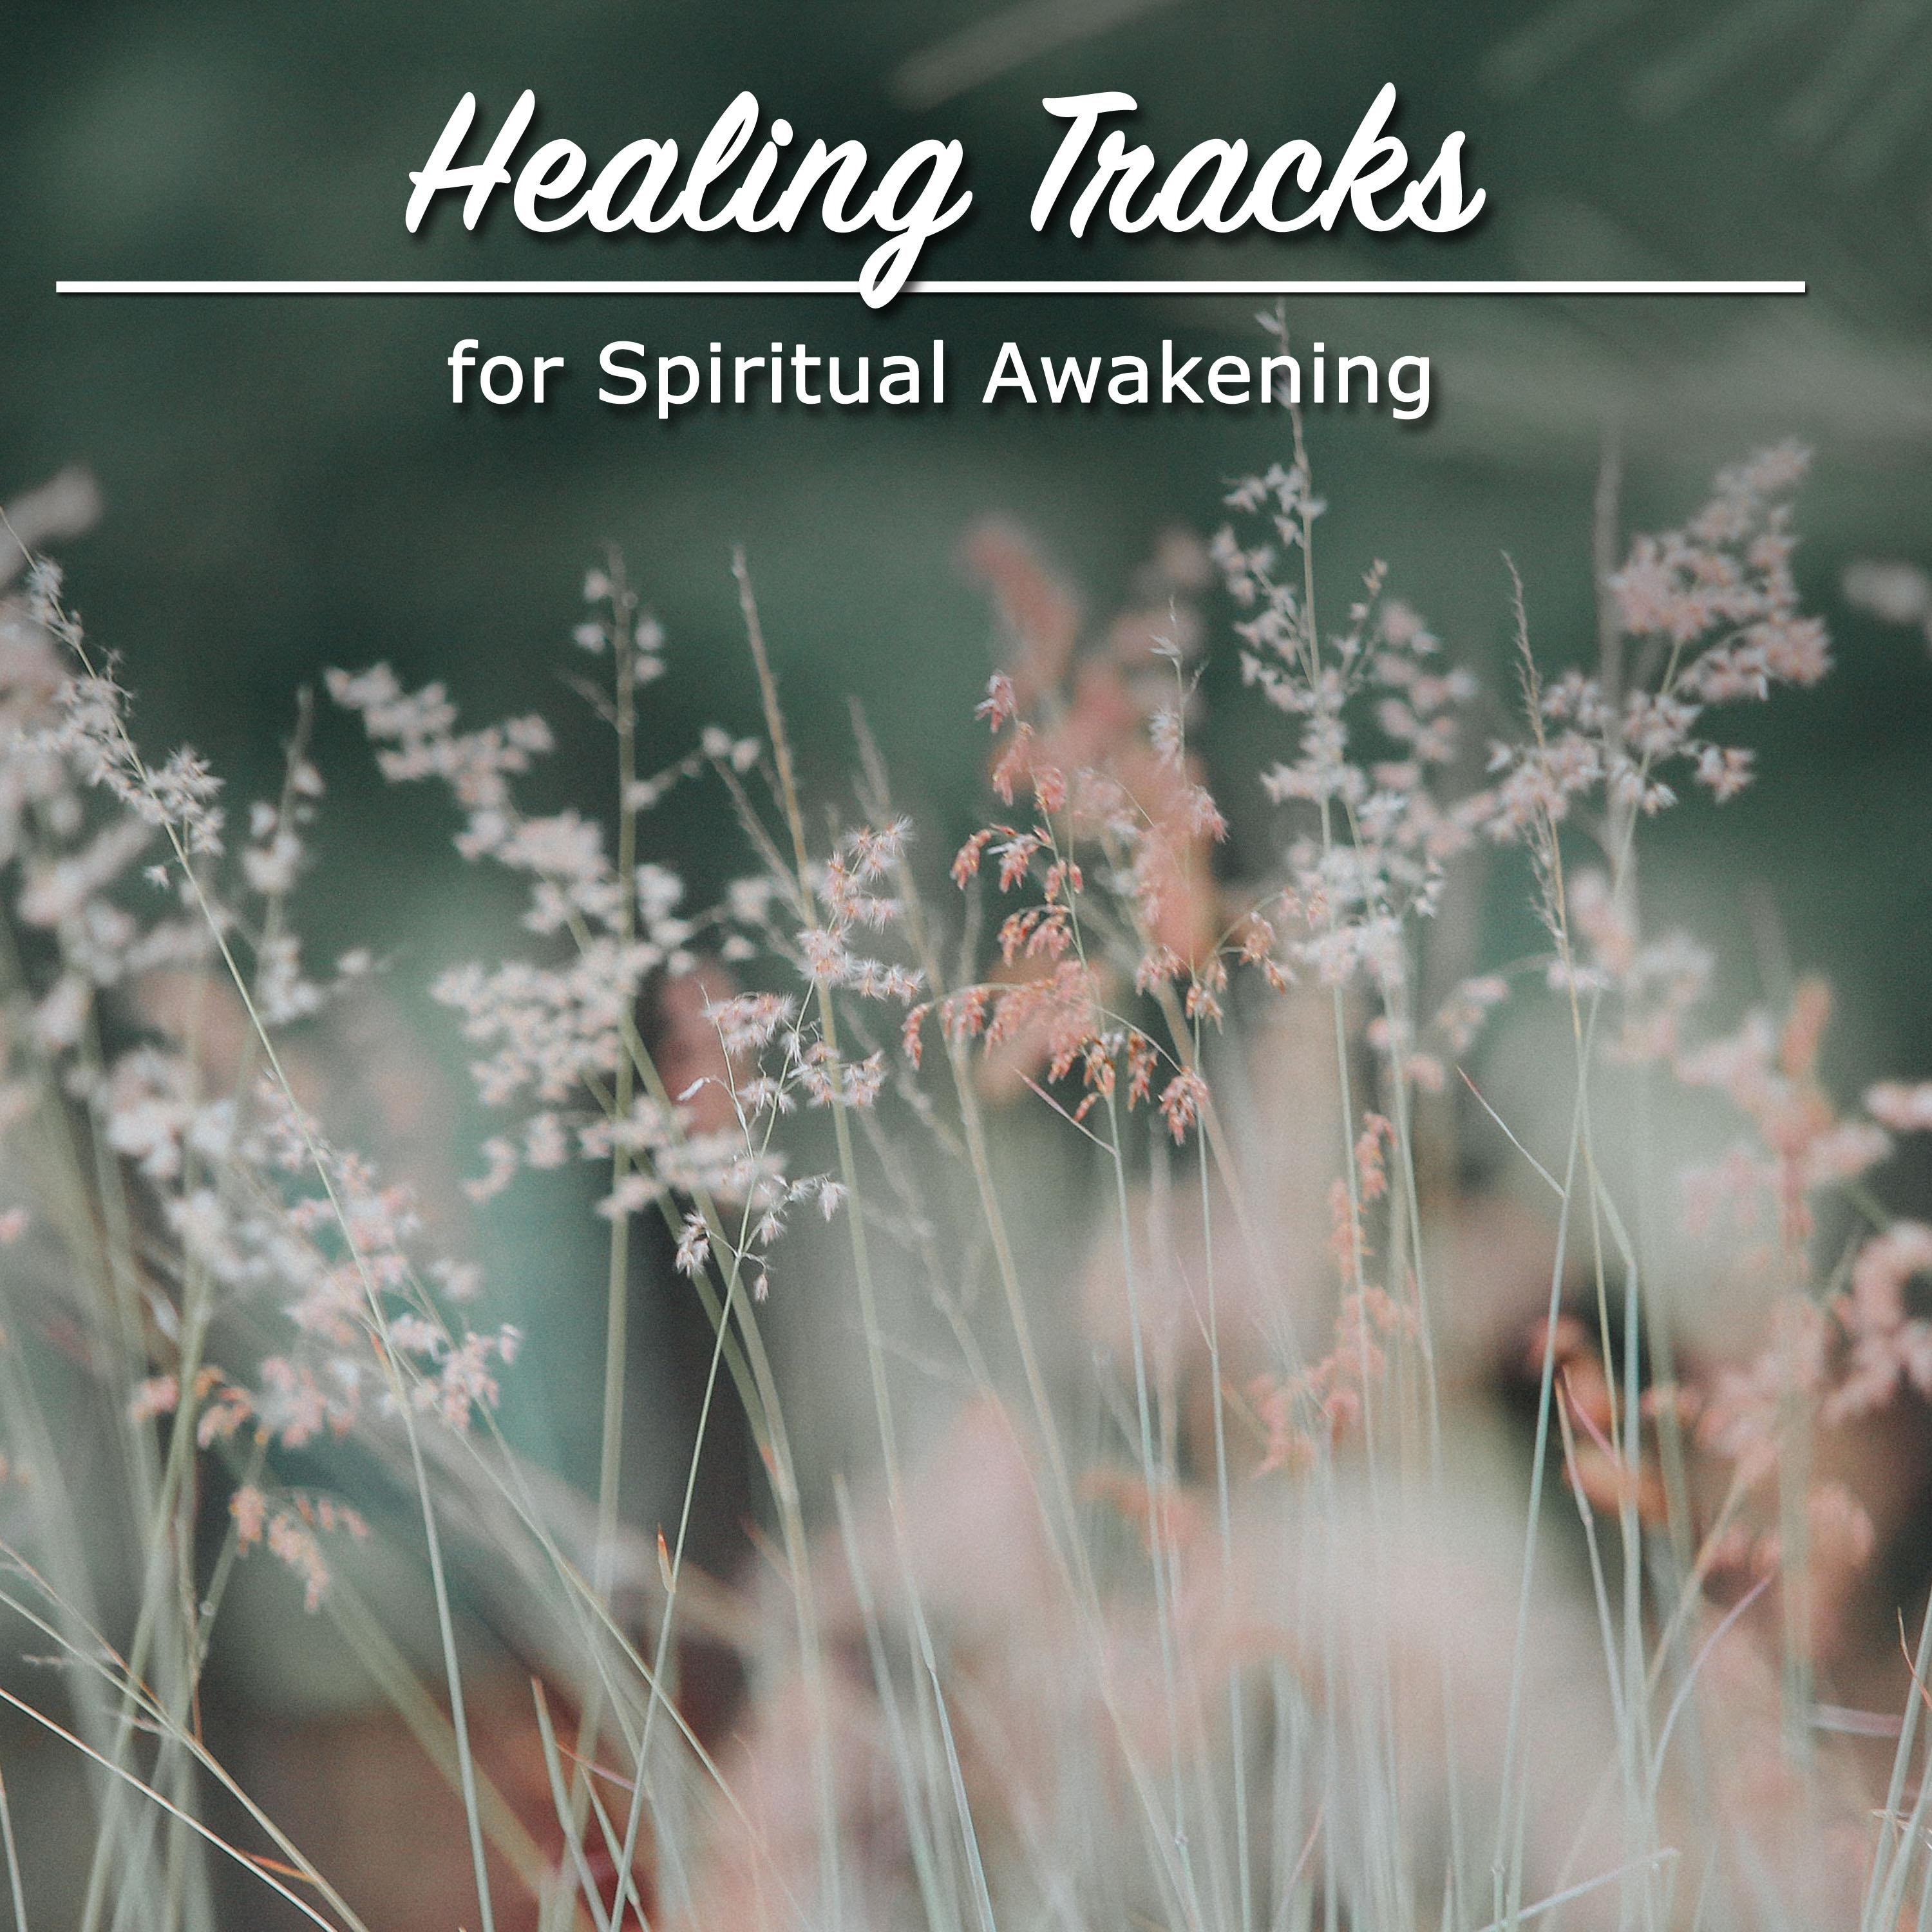 11 Natural Healing Tracks for Spirital Awakening